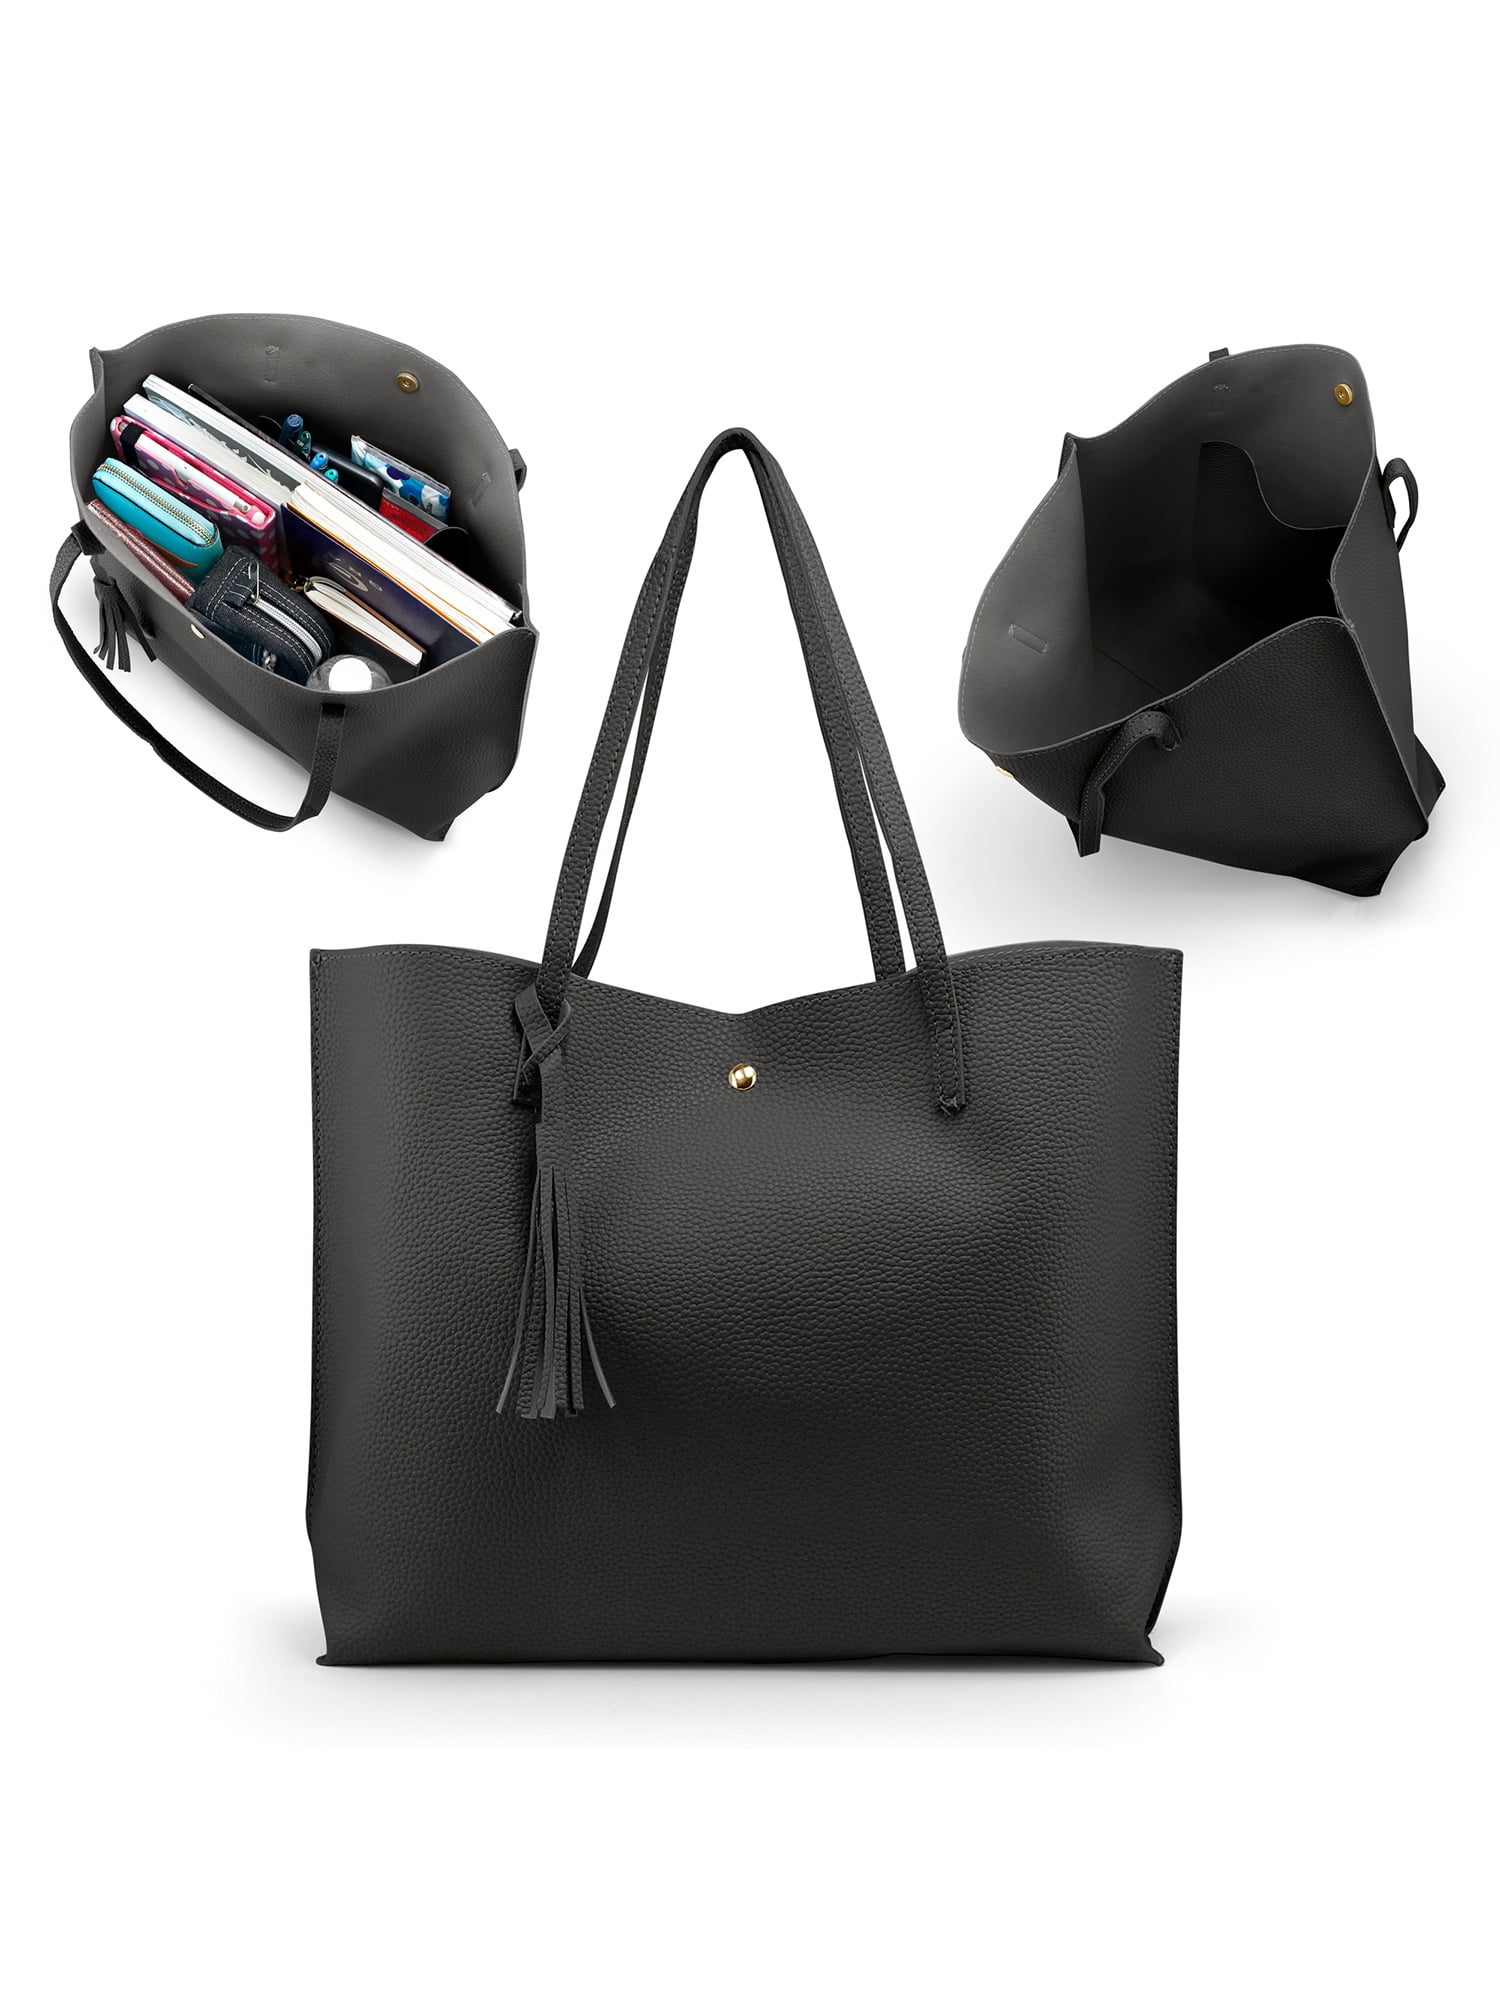 Women Handbag Leather Shoulder Bag Tote Purse Ladies Satchel Pouch Fashion Black 